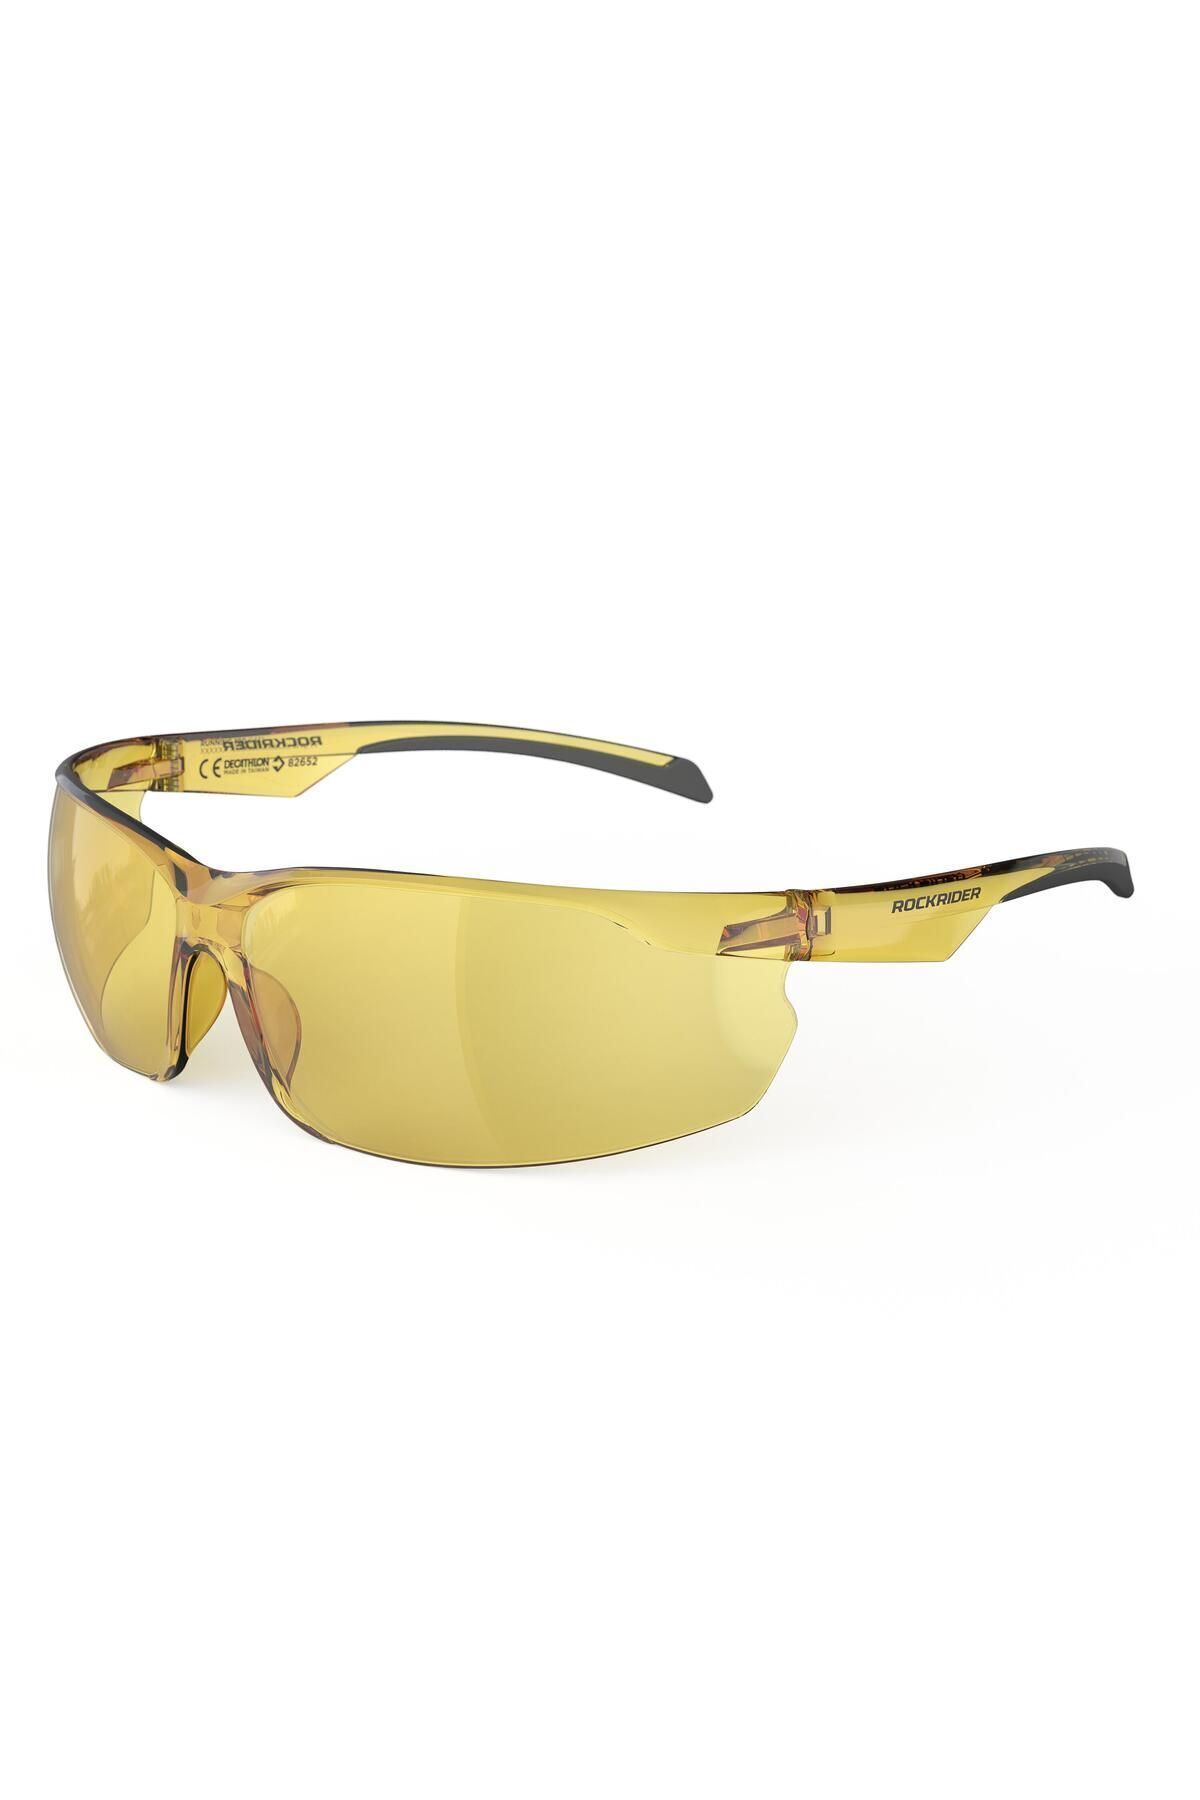 Decathlon Dağ Bisikleti Gözlüğü - Yetişkin - 1. Kategori - Sarı - St 100